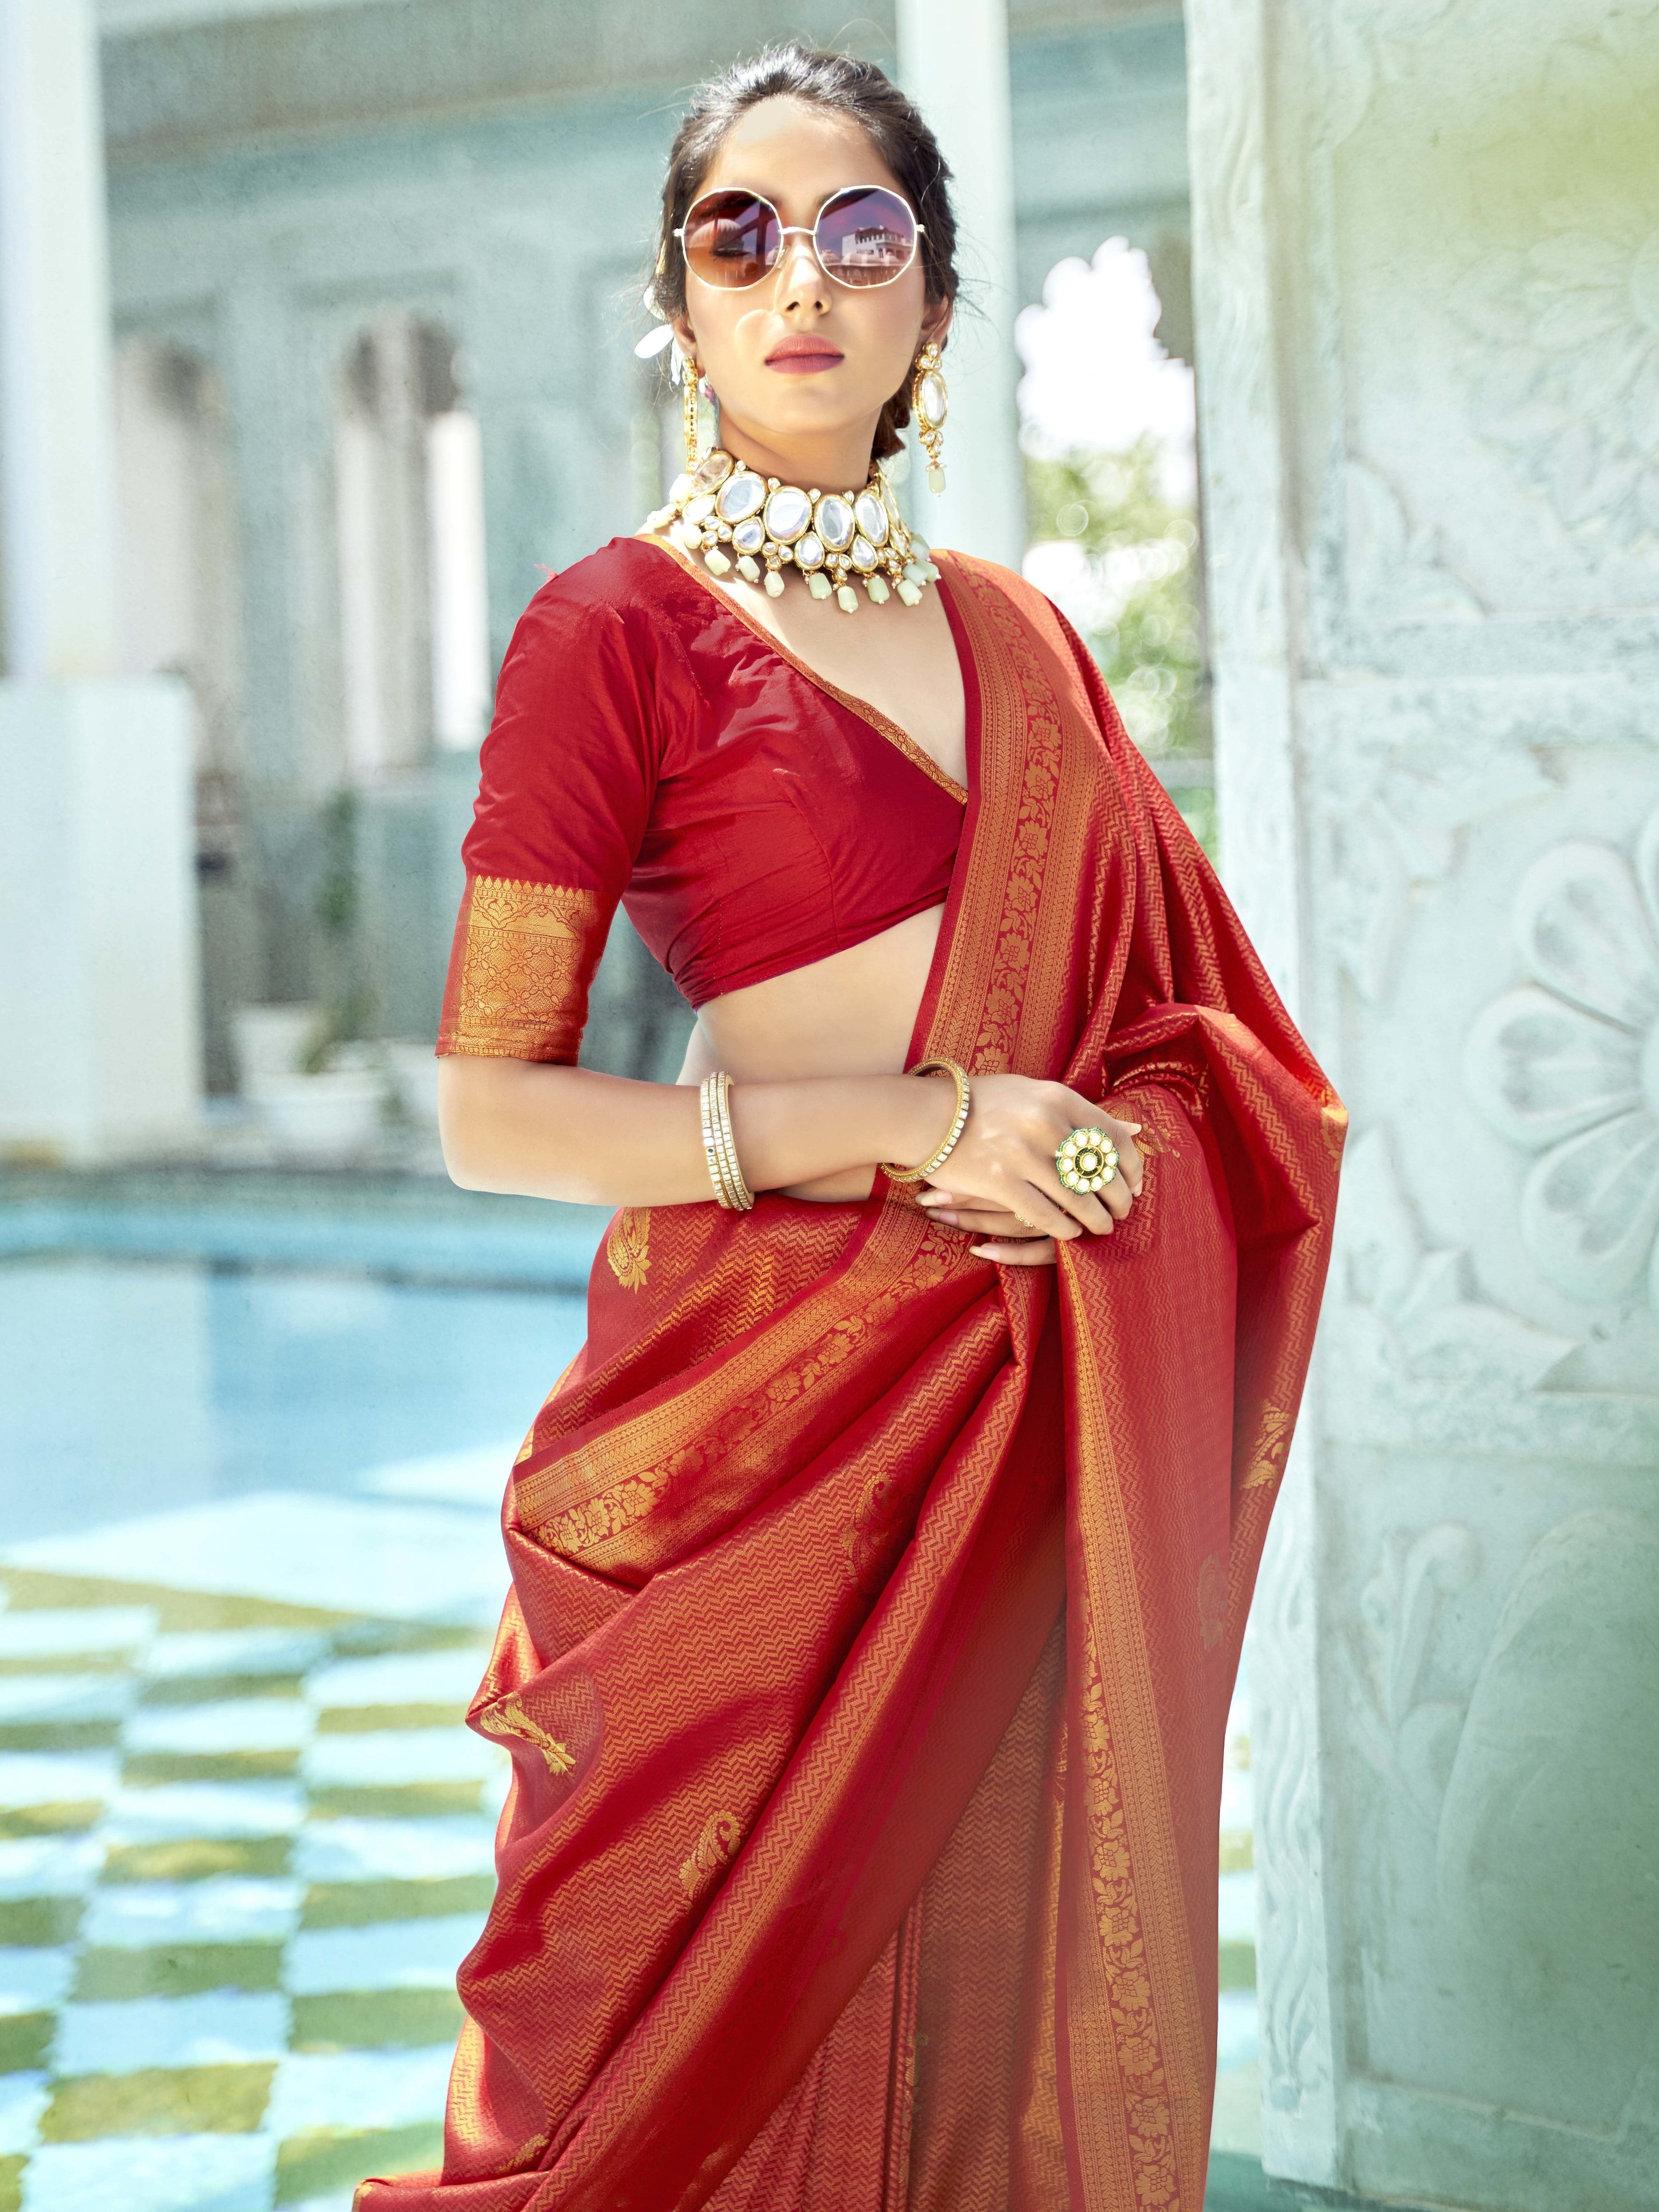 Dark Red Gold Sari Saree, Red Saree, Dark red Sari, net Saree, Ready Made  saree | eBay